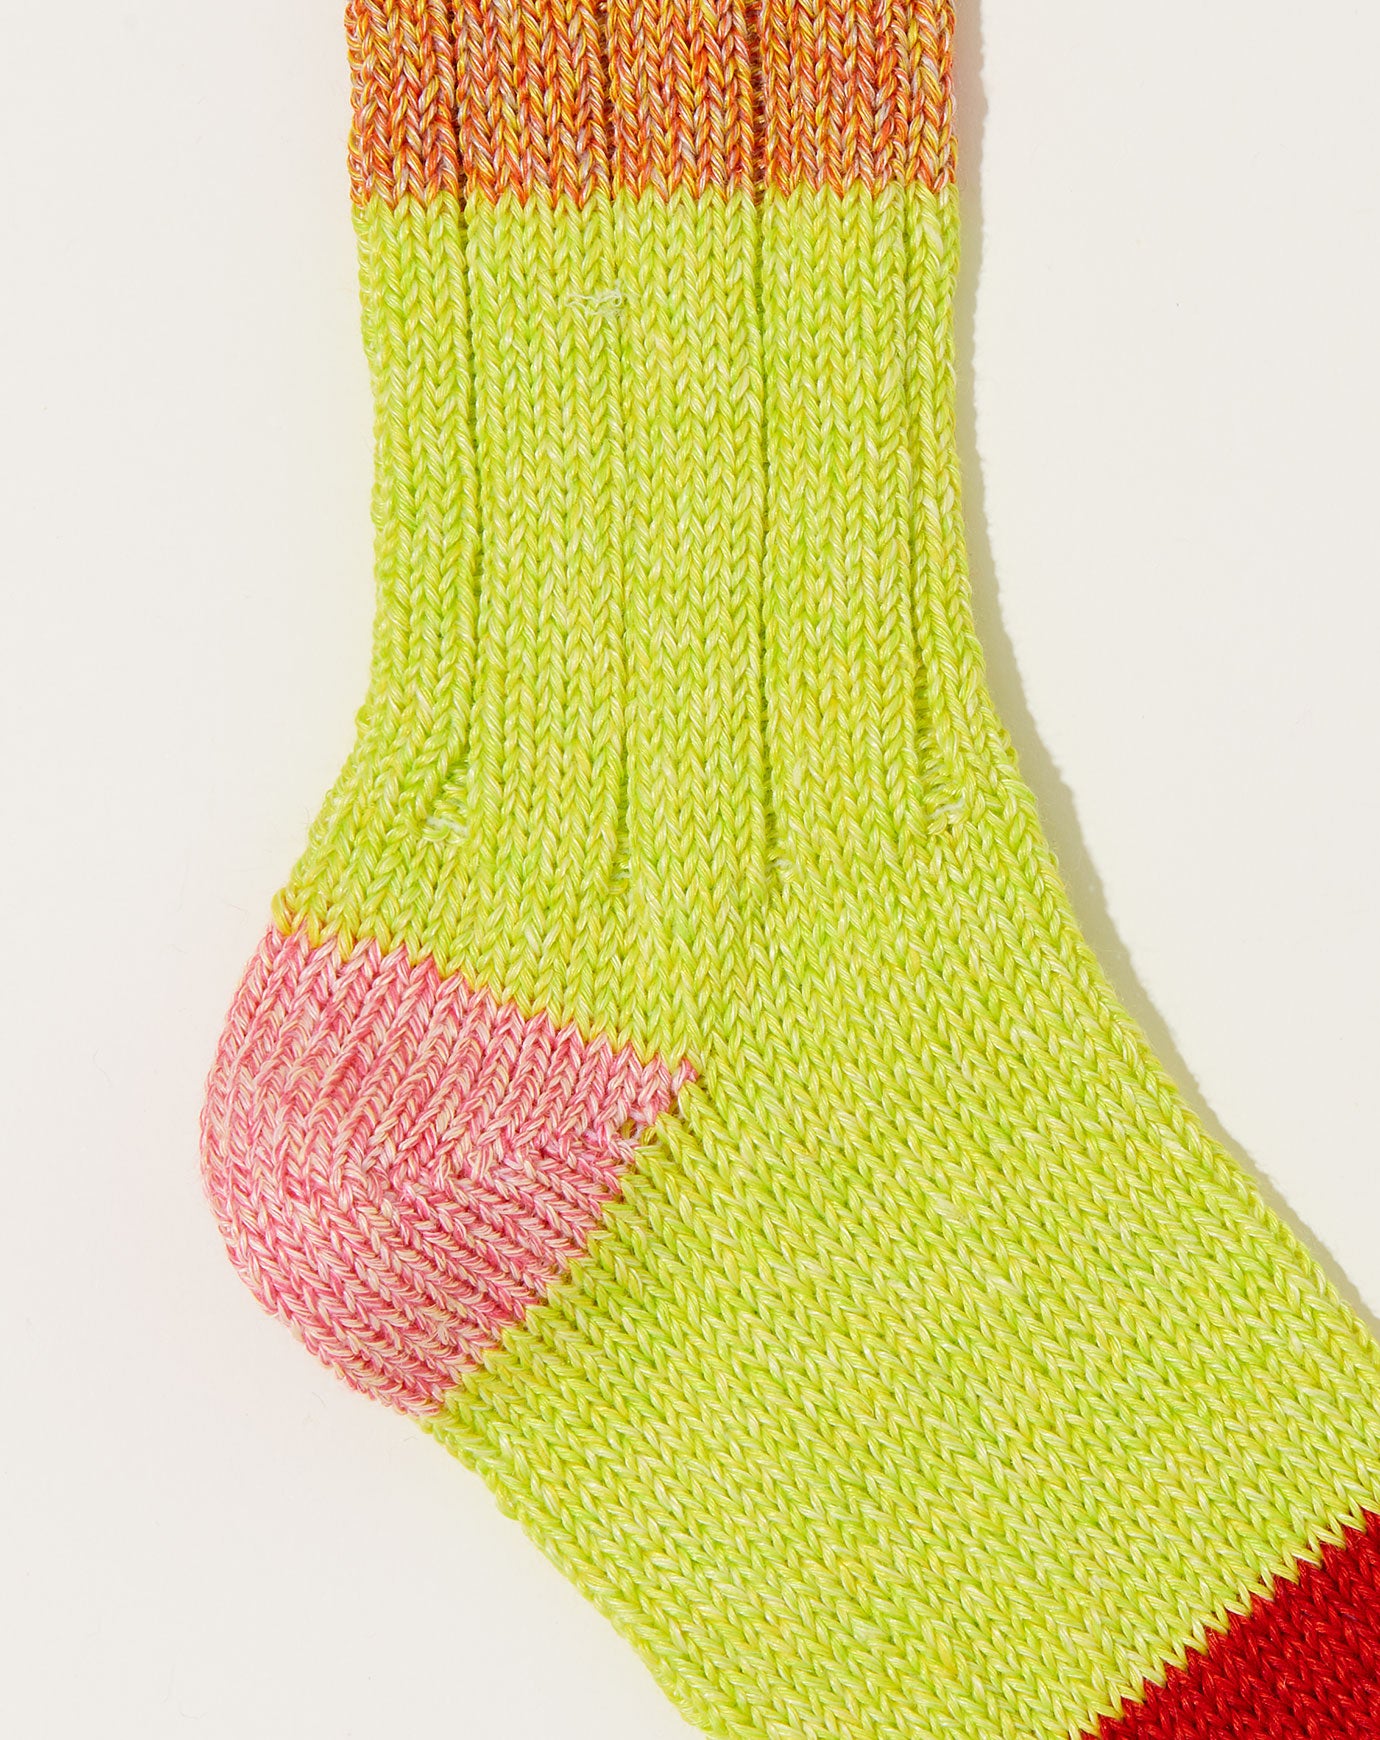 Kapital 56 Yarns Linen Grandrelle Socks in Orange